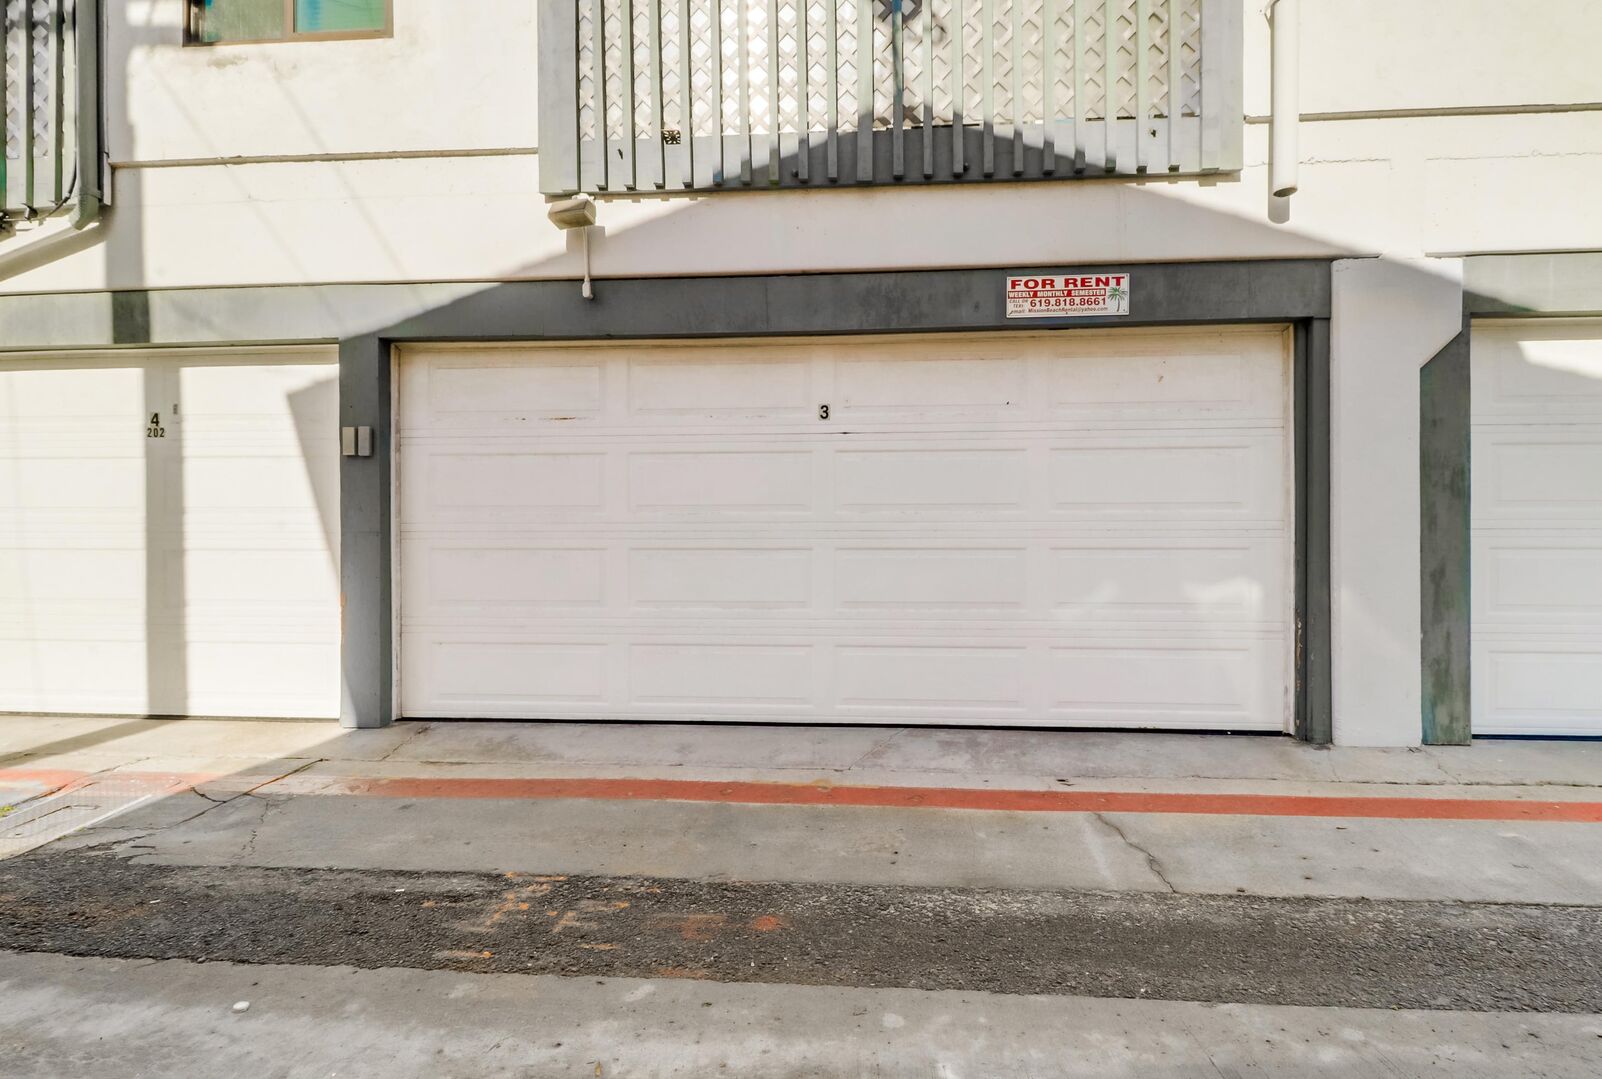 Closed garage door for parking